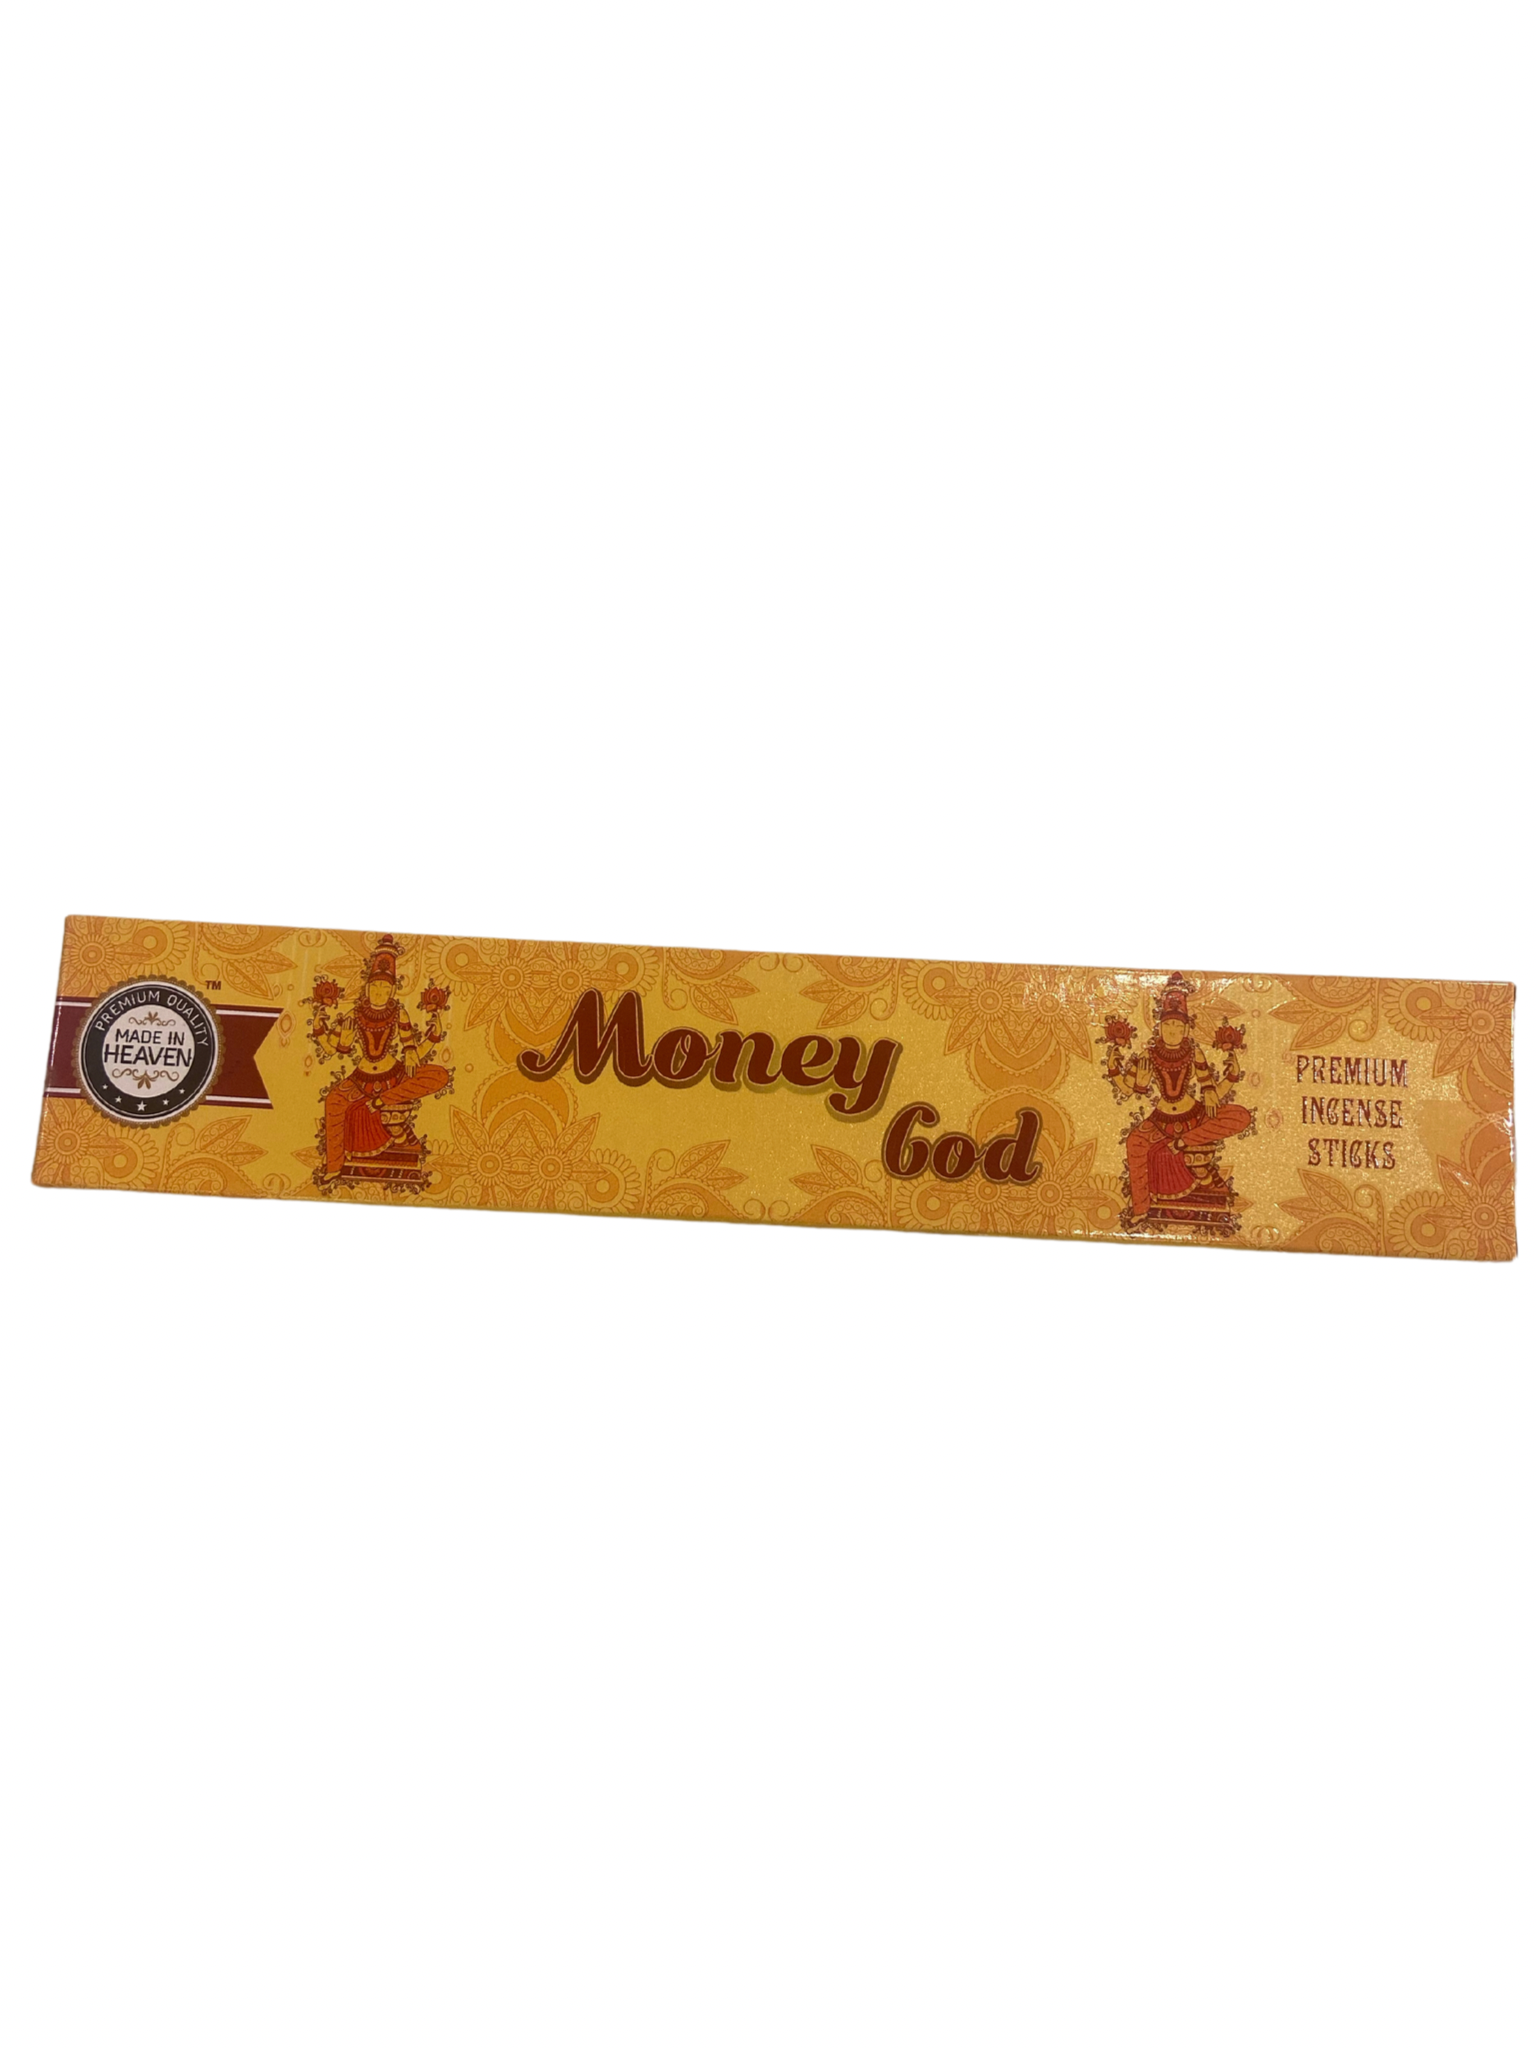 Money god incense